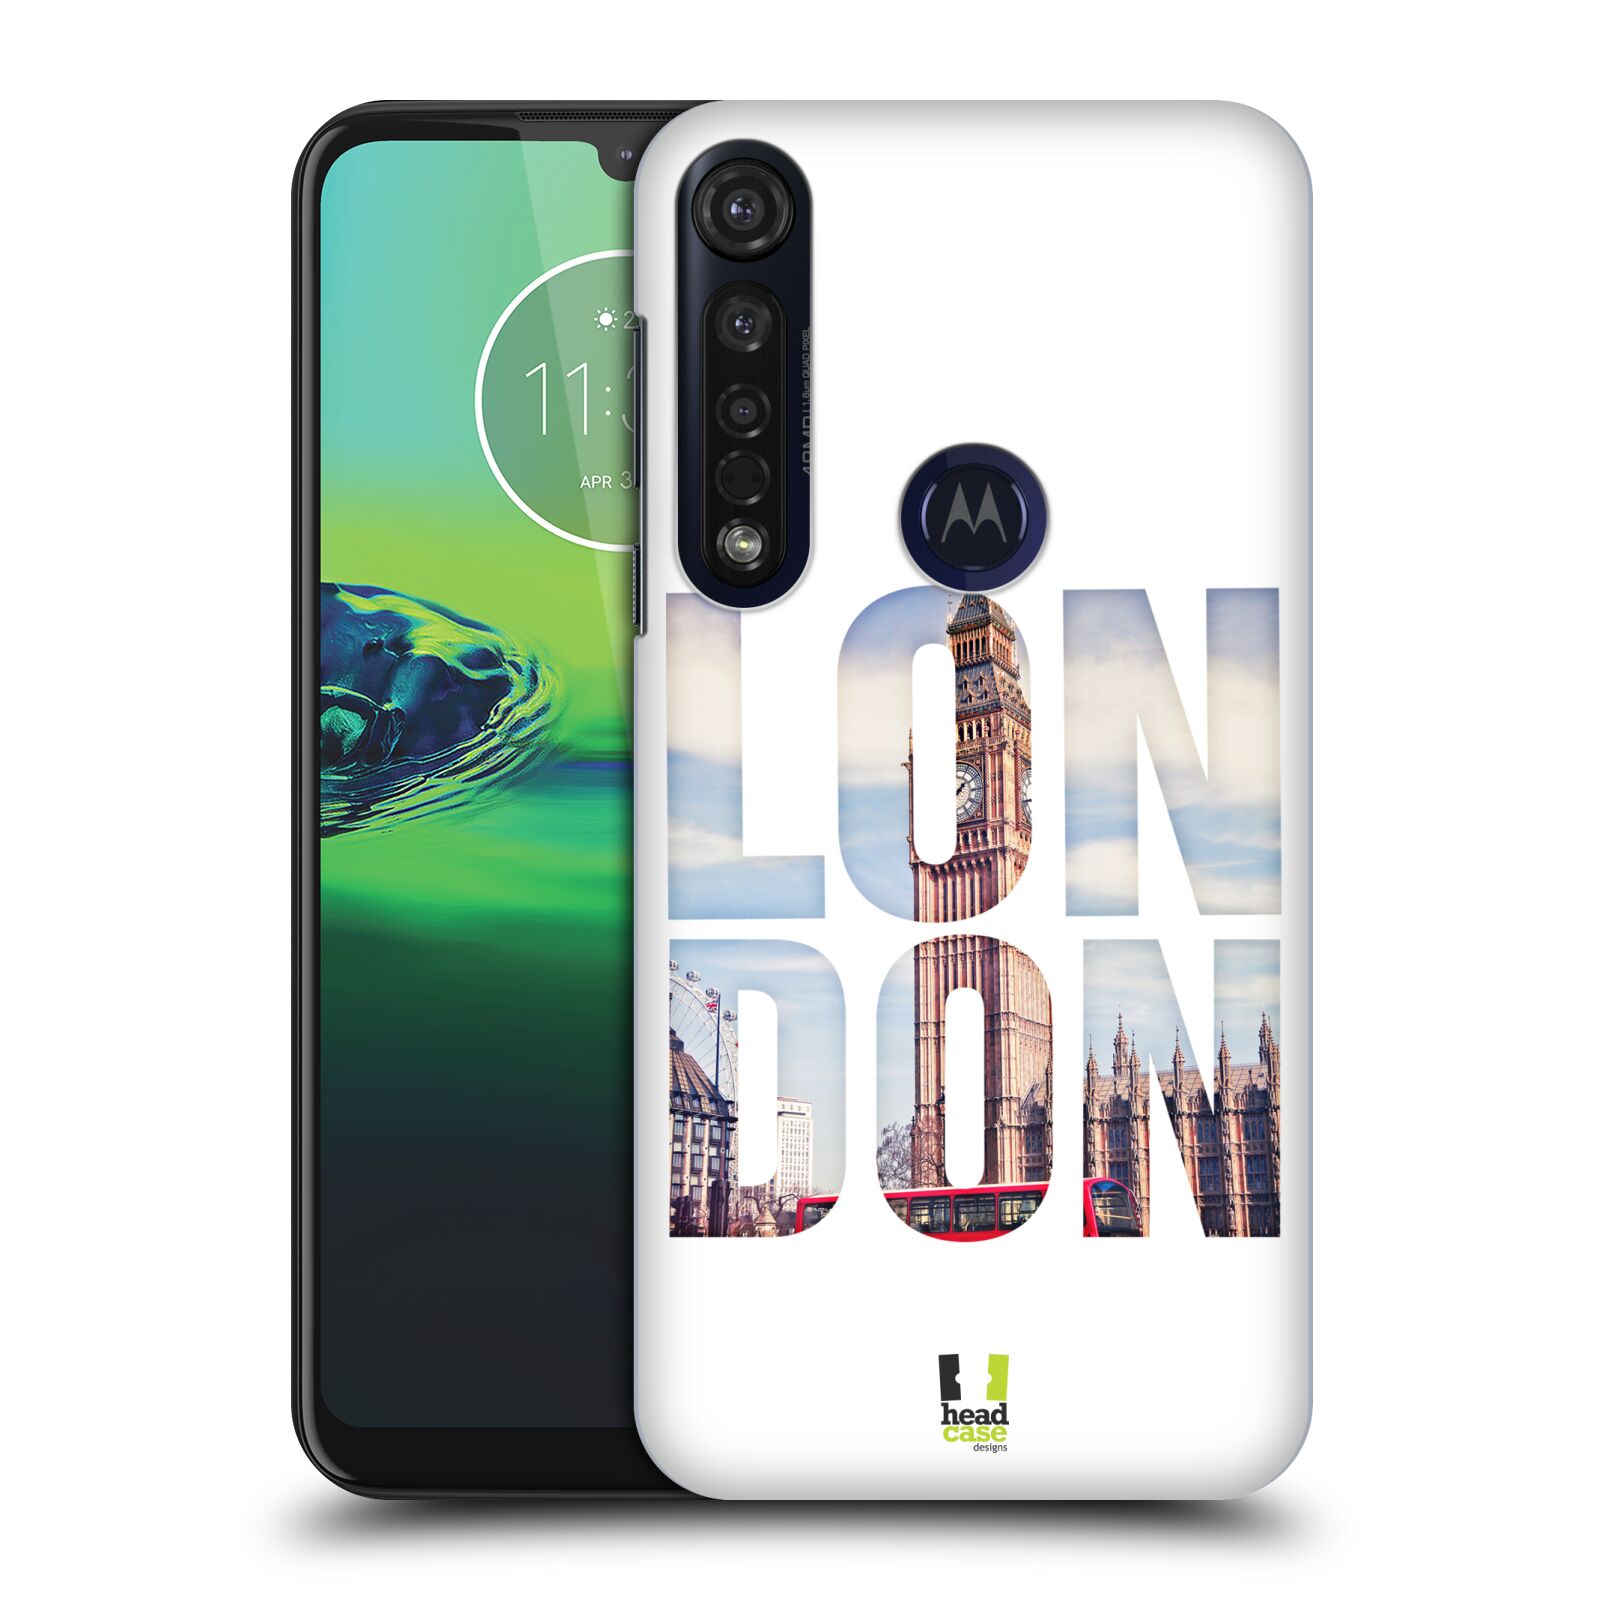 Pouzdro na mobil Motorola Moto G8 PLUS - HEAD CASE - vzor Města foto a nadpis ANGLIE, LONDÝN, BIG BEN